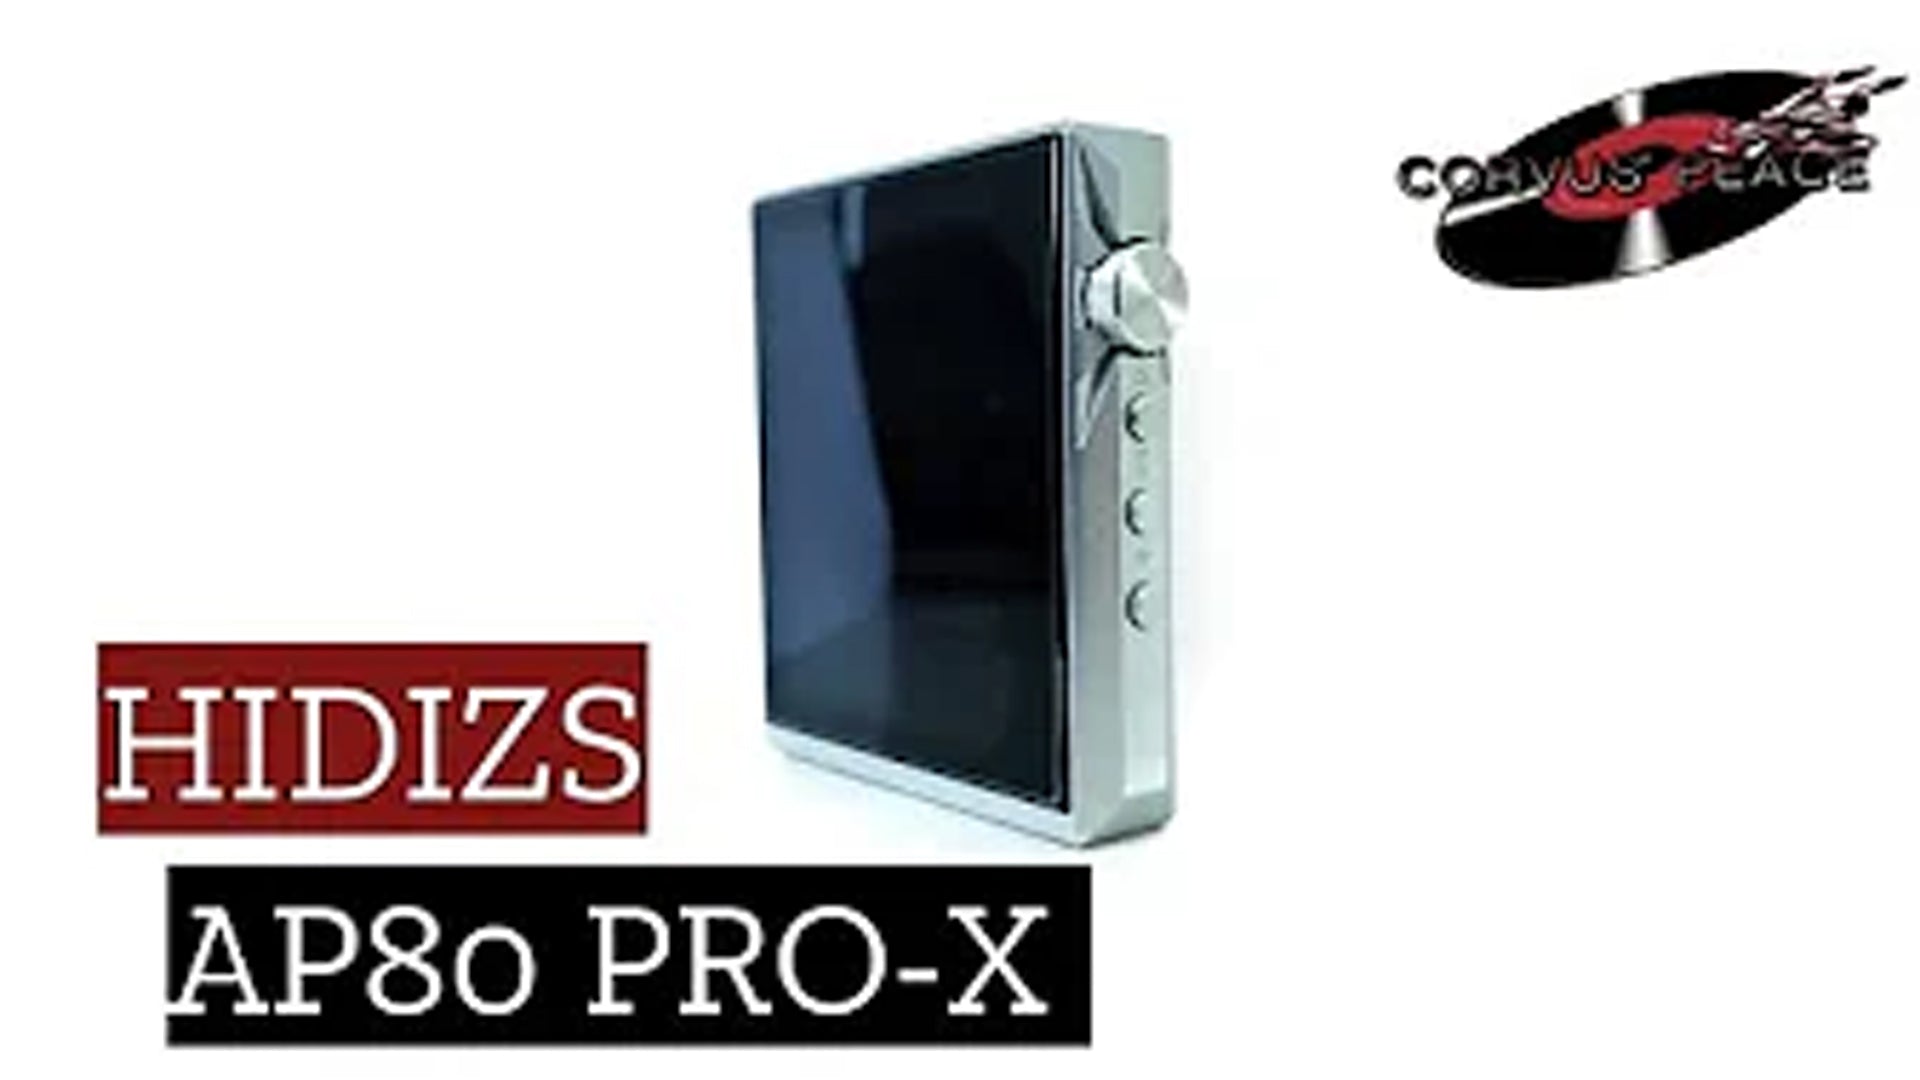 Hidizs AP80 PRO-X Review - Corvus Peace